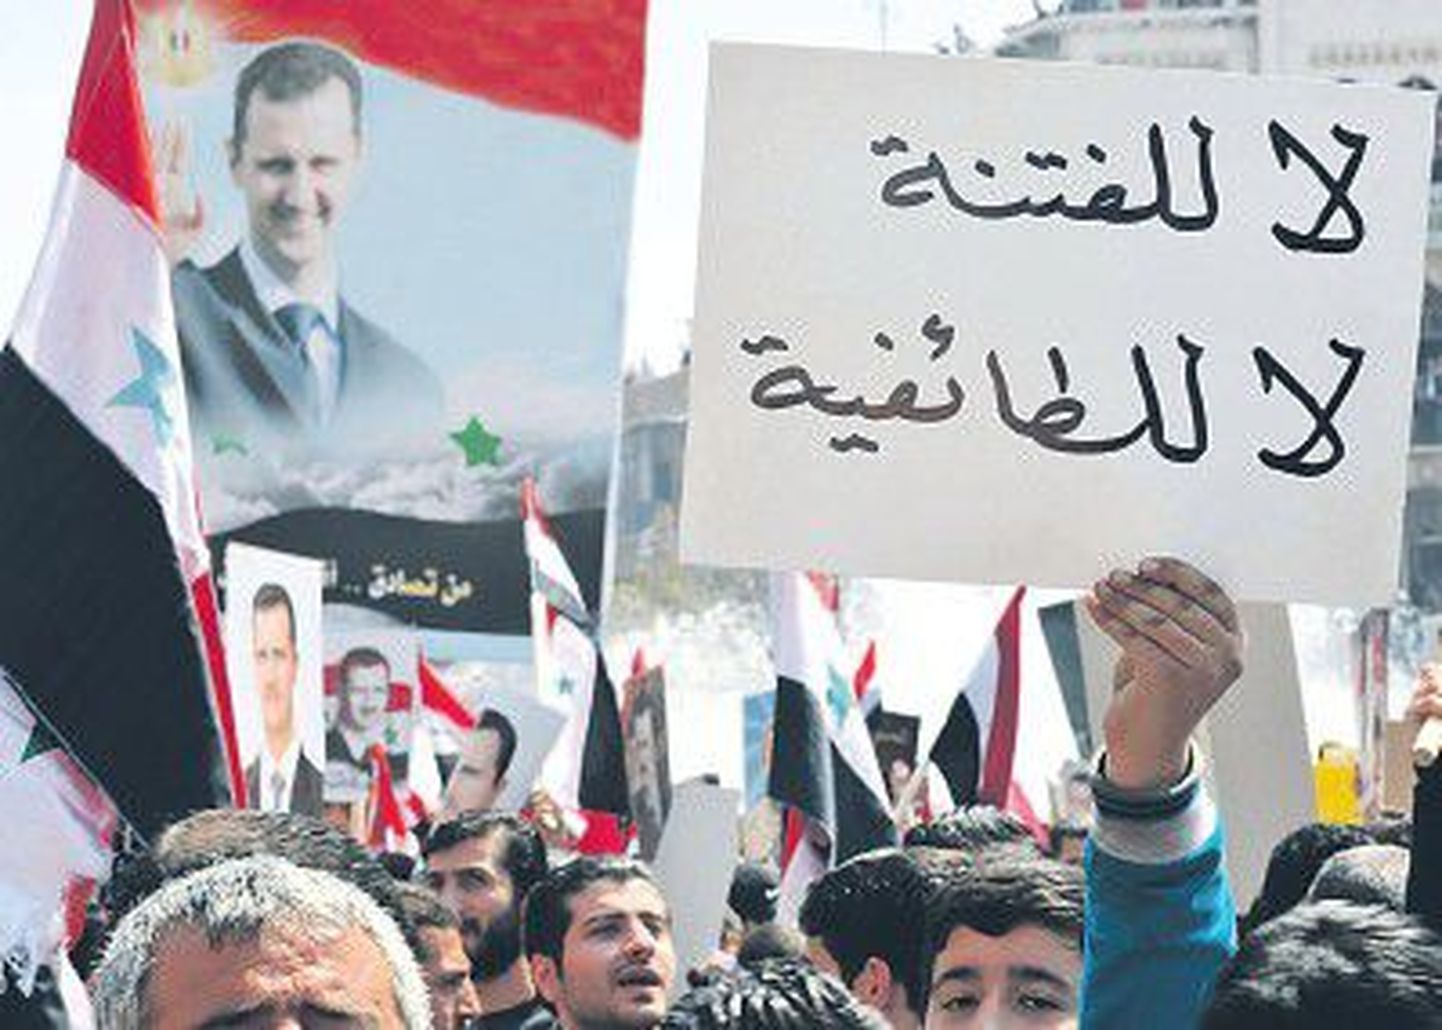 В течение двух недель в Сирии проходили массовые демонстрации протеста, участники которых требовали расширения политических прав и улучшения экономической ситуации.